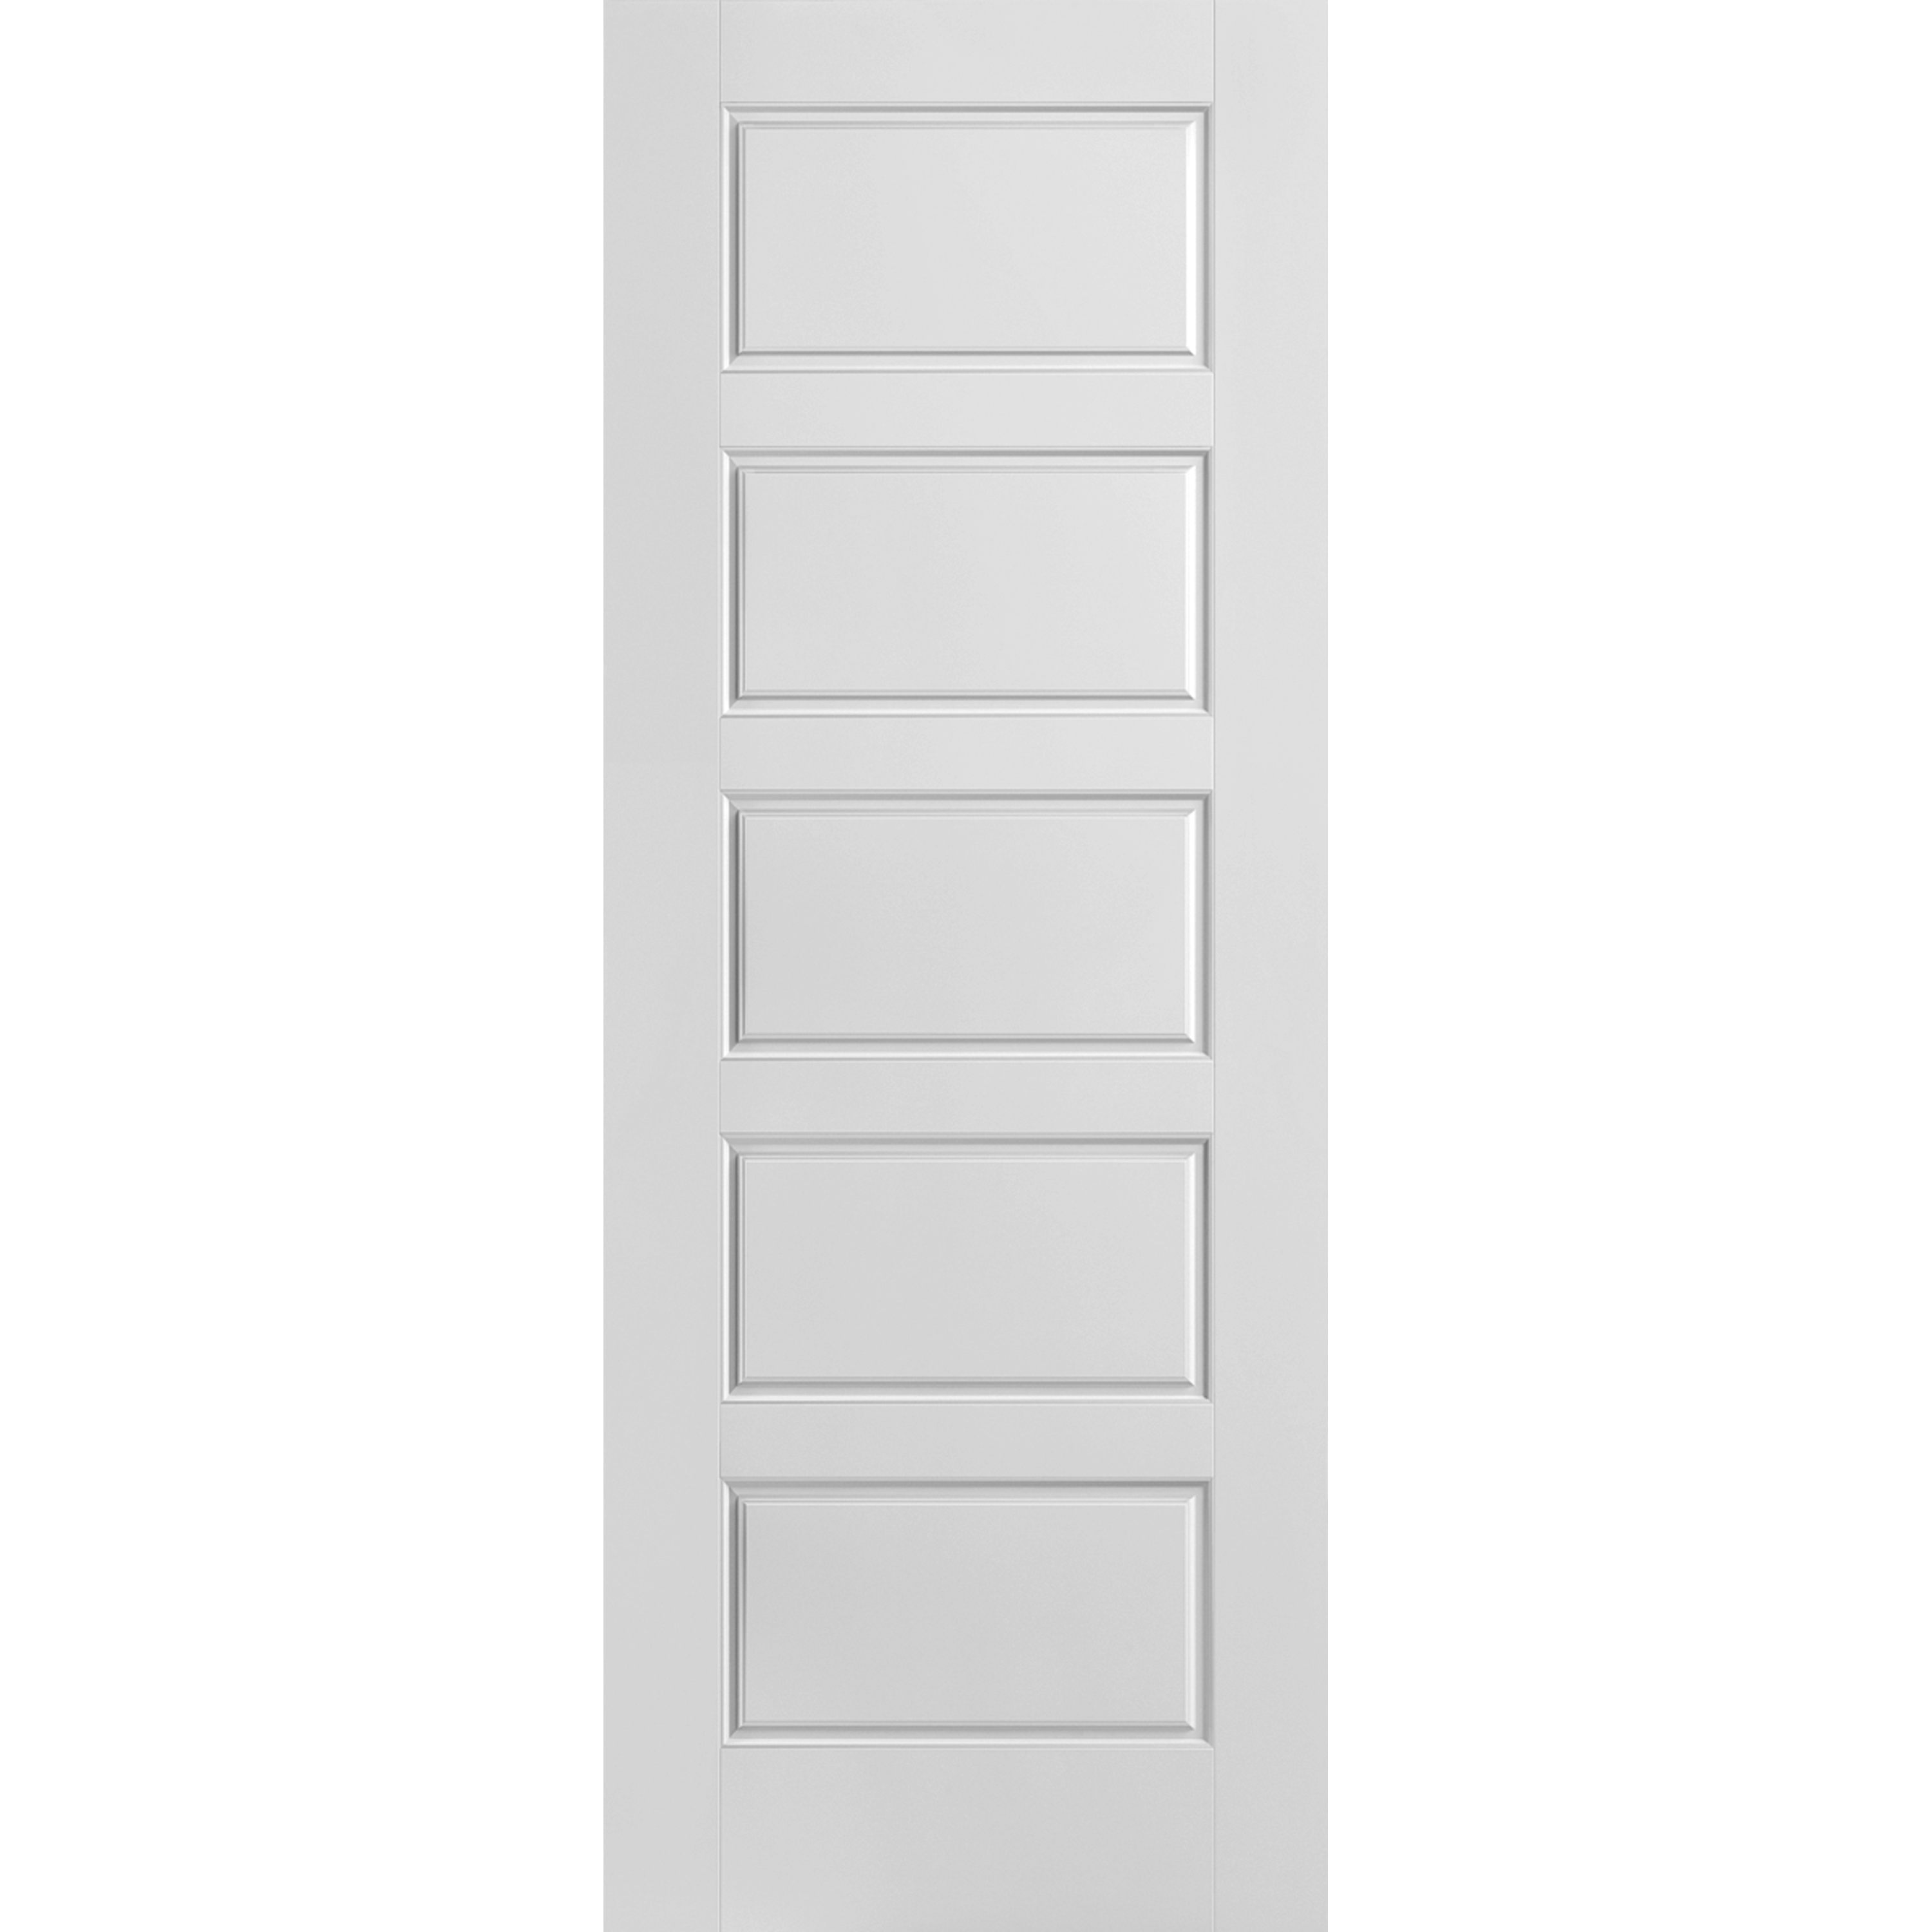 28x80 Riverside Moulded Panel Door Hollow Core